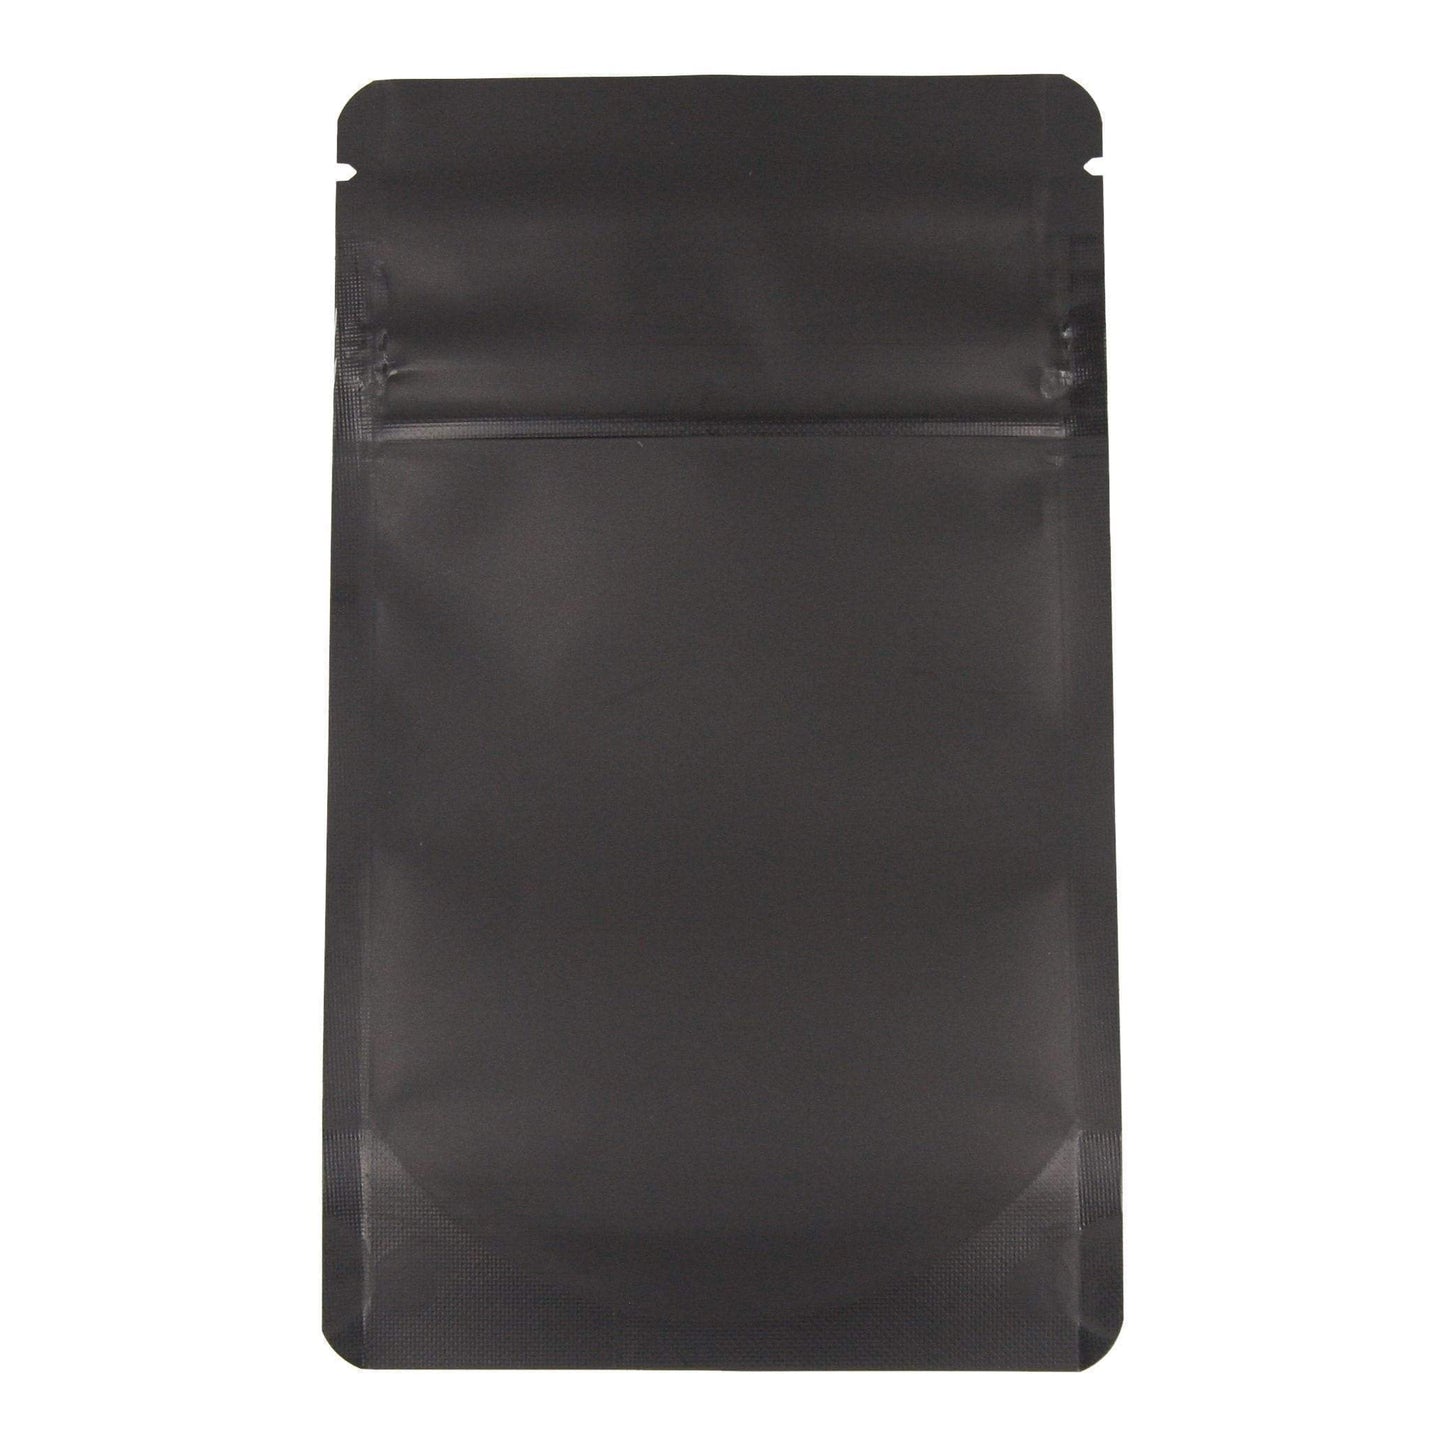 Bag King Child-Resistant Clear Front Bag (1/8th oz) Matte Black